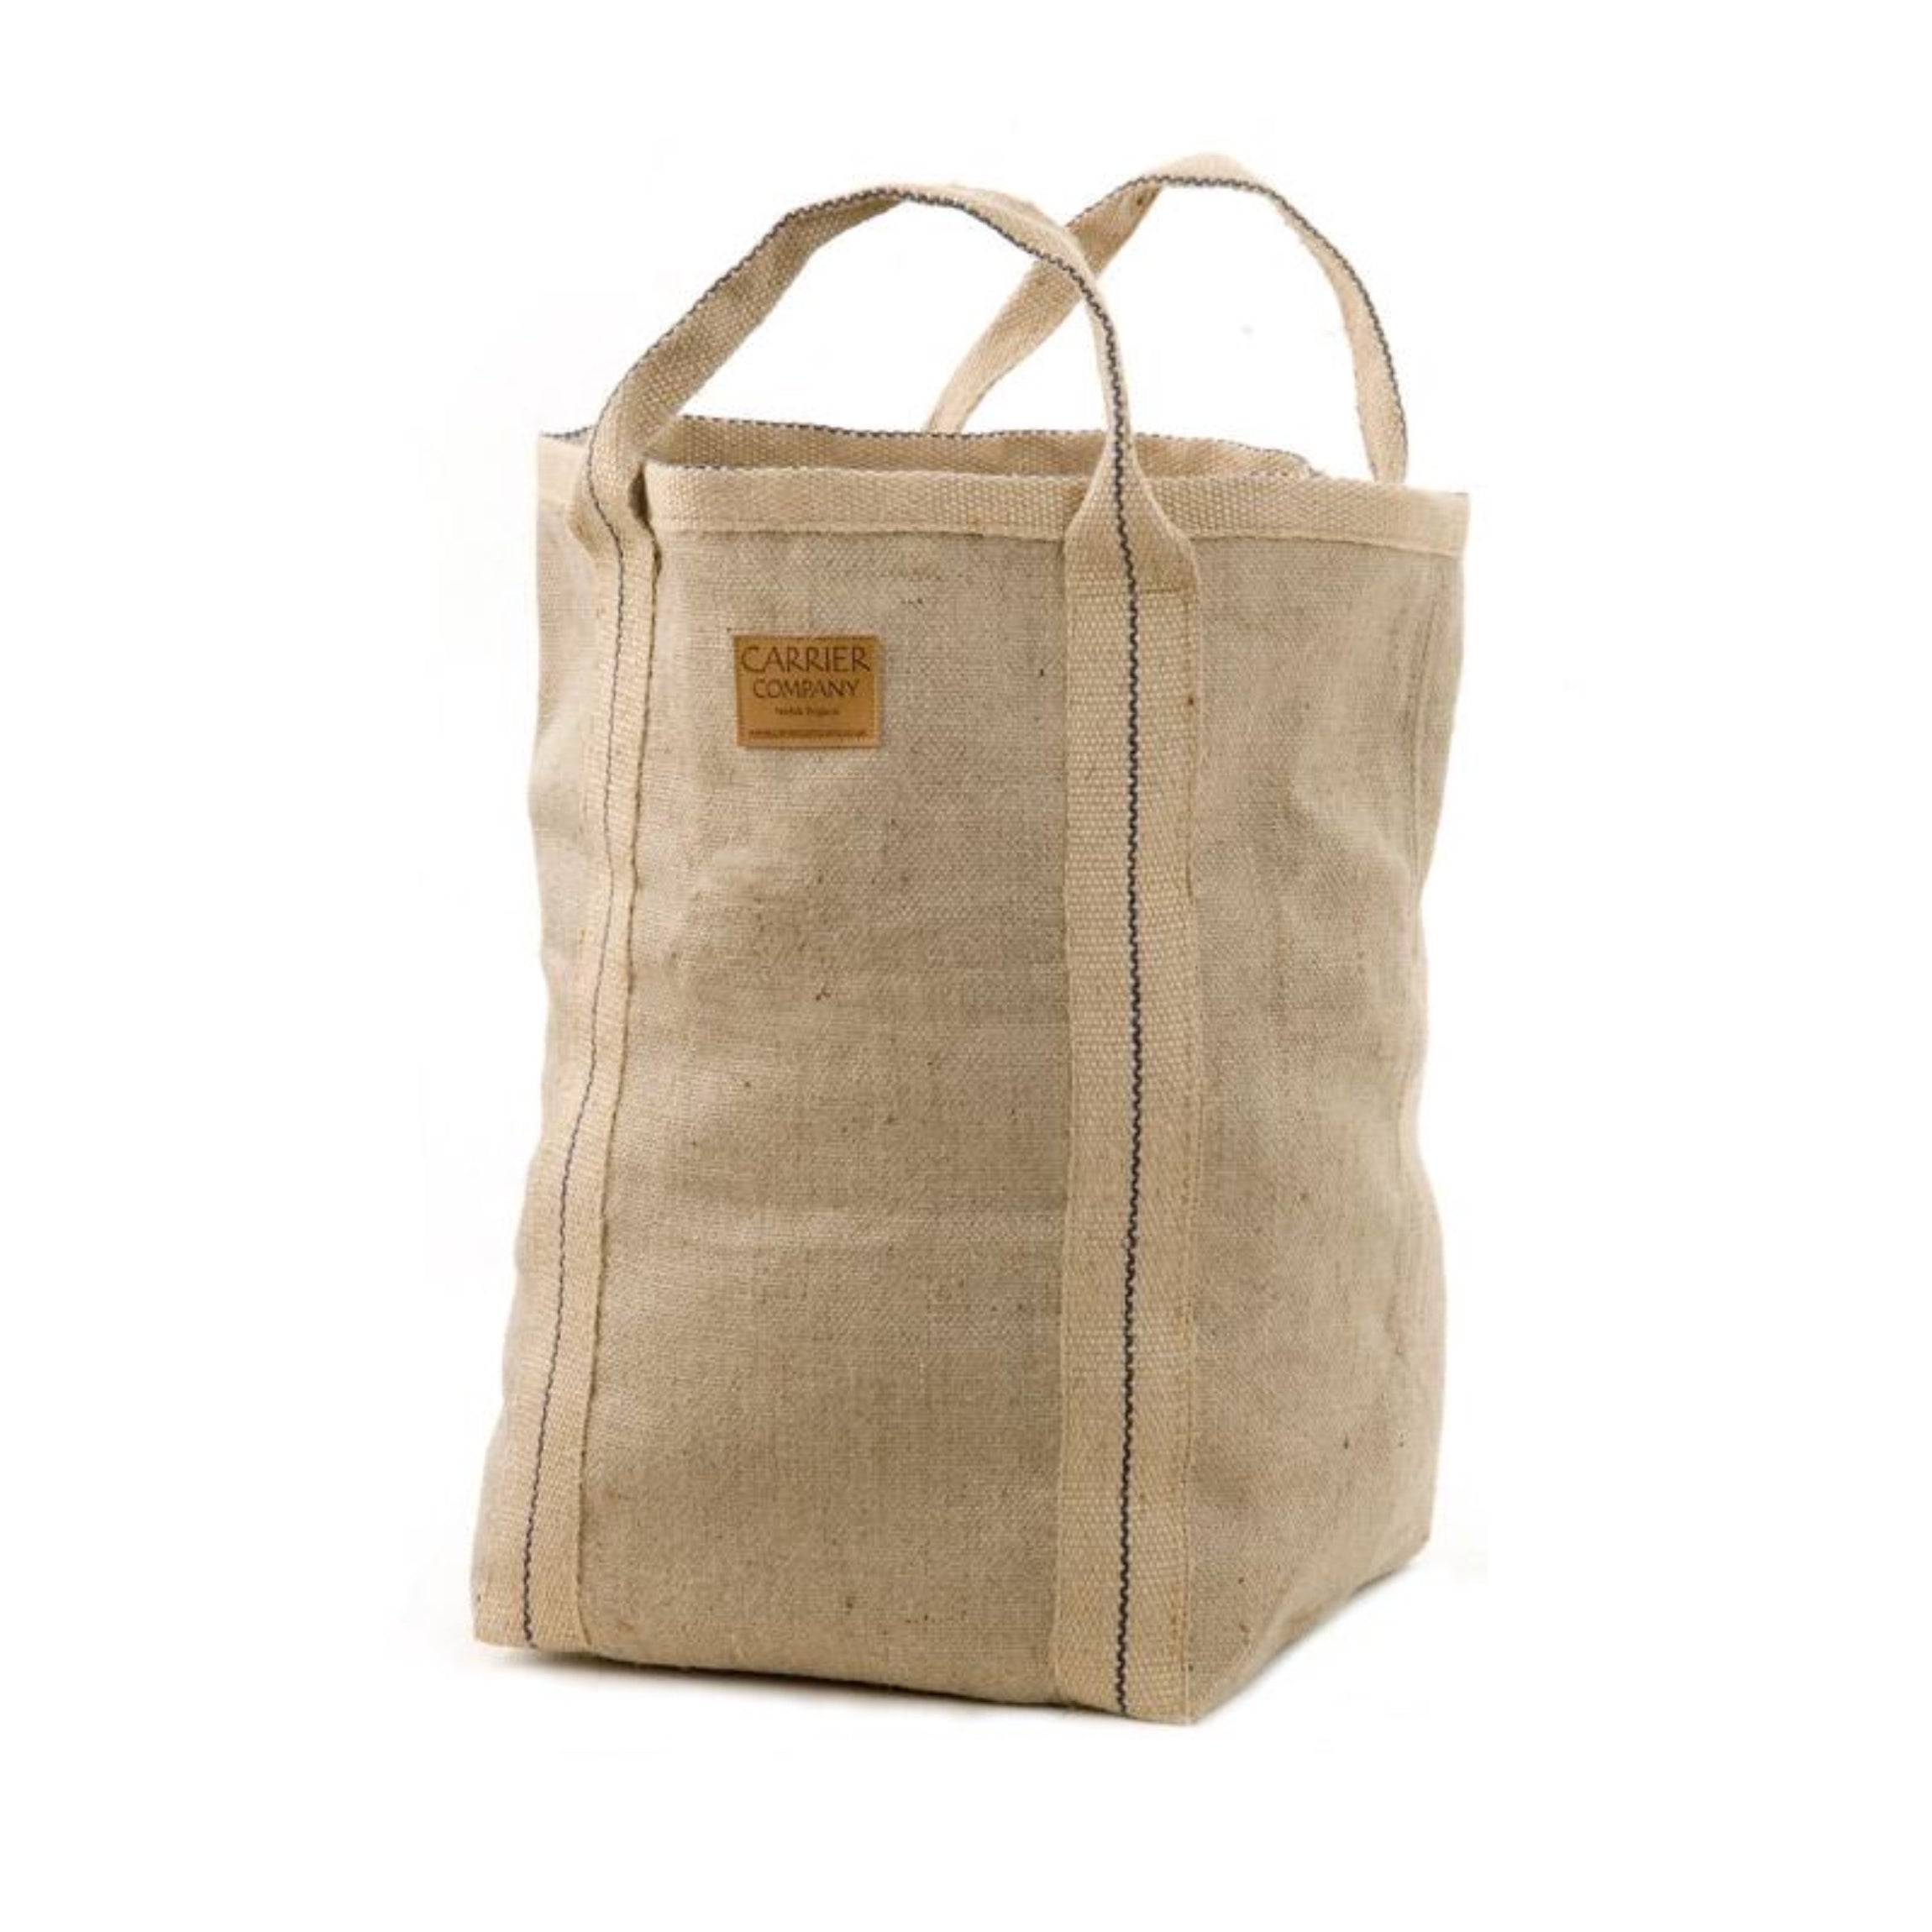 Log Bag | Jute Shopper | Fireside Bag | Carrier Company